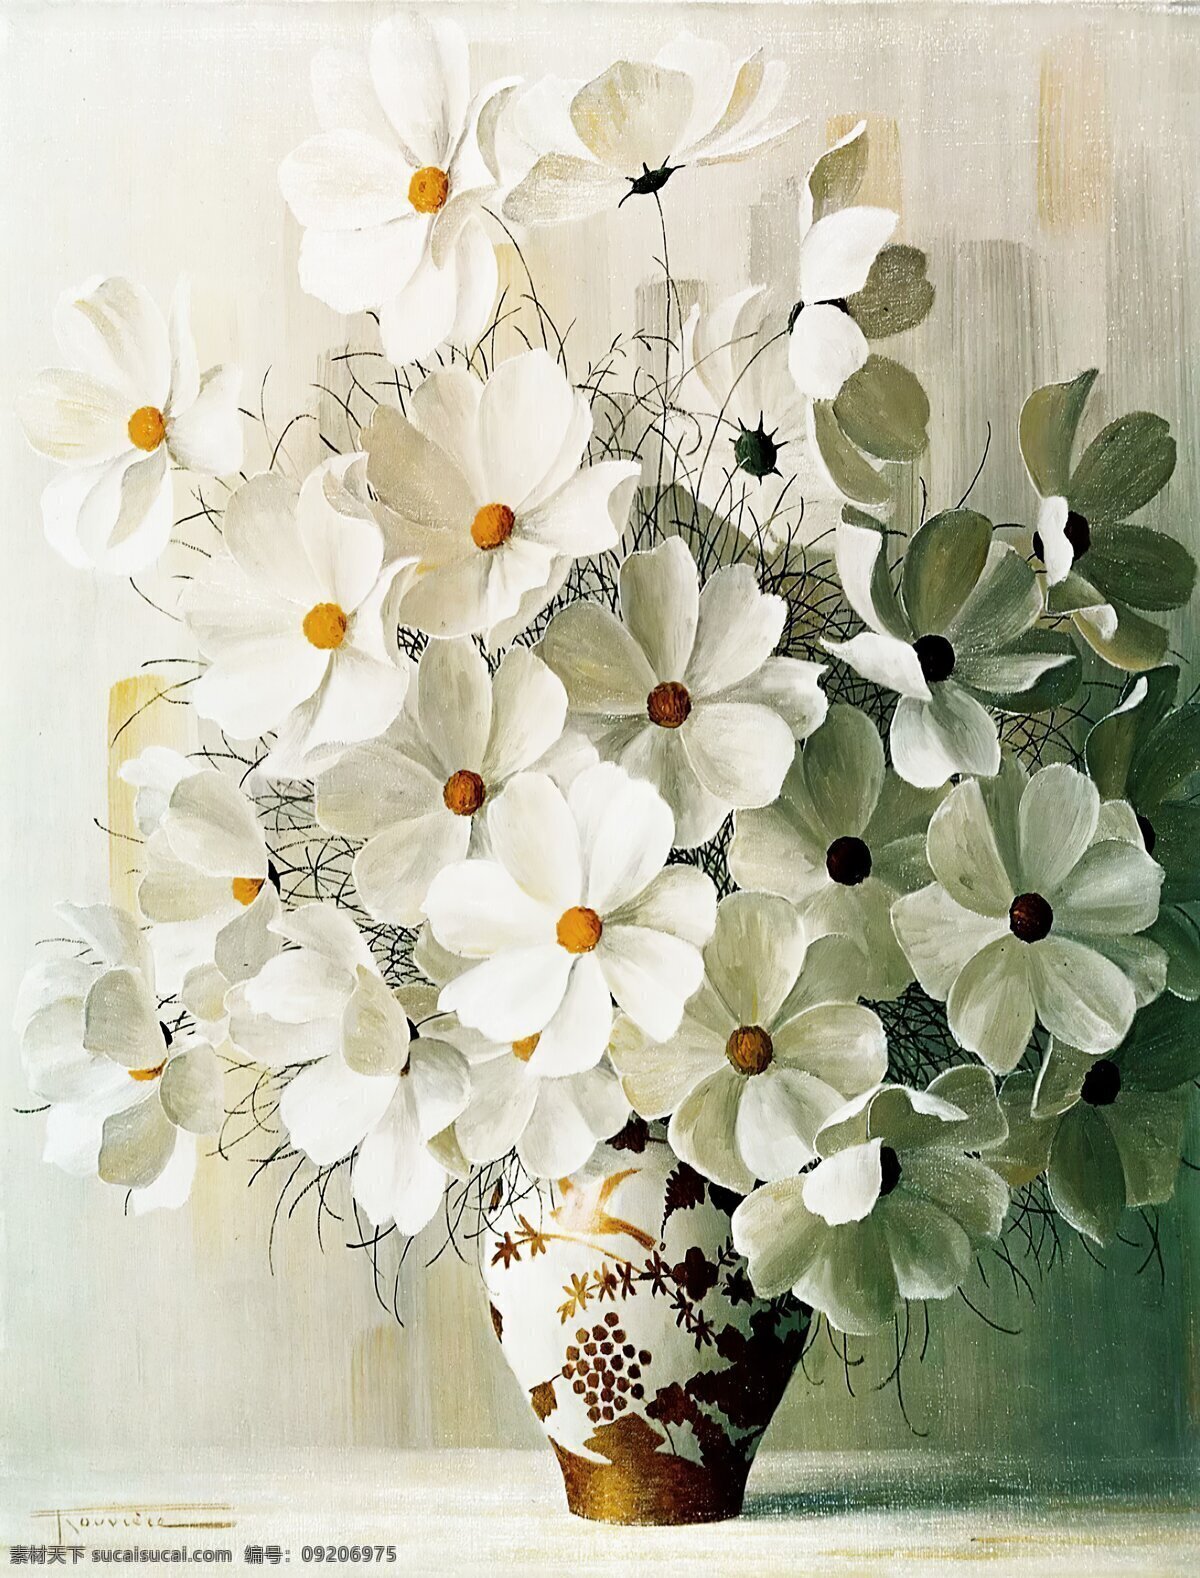 静物白花图片 静物 花瓶 桌子 室内 陶瓷 油画 瓶子 手绘画 无框画 抽象画 桌子上的摆件 花